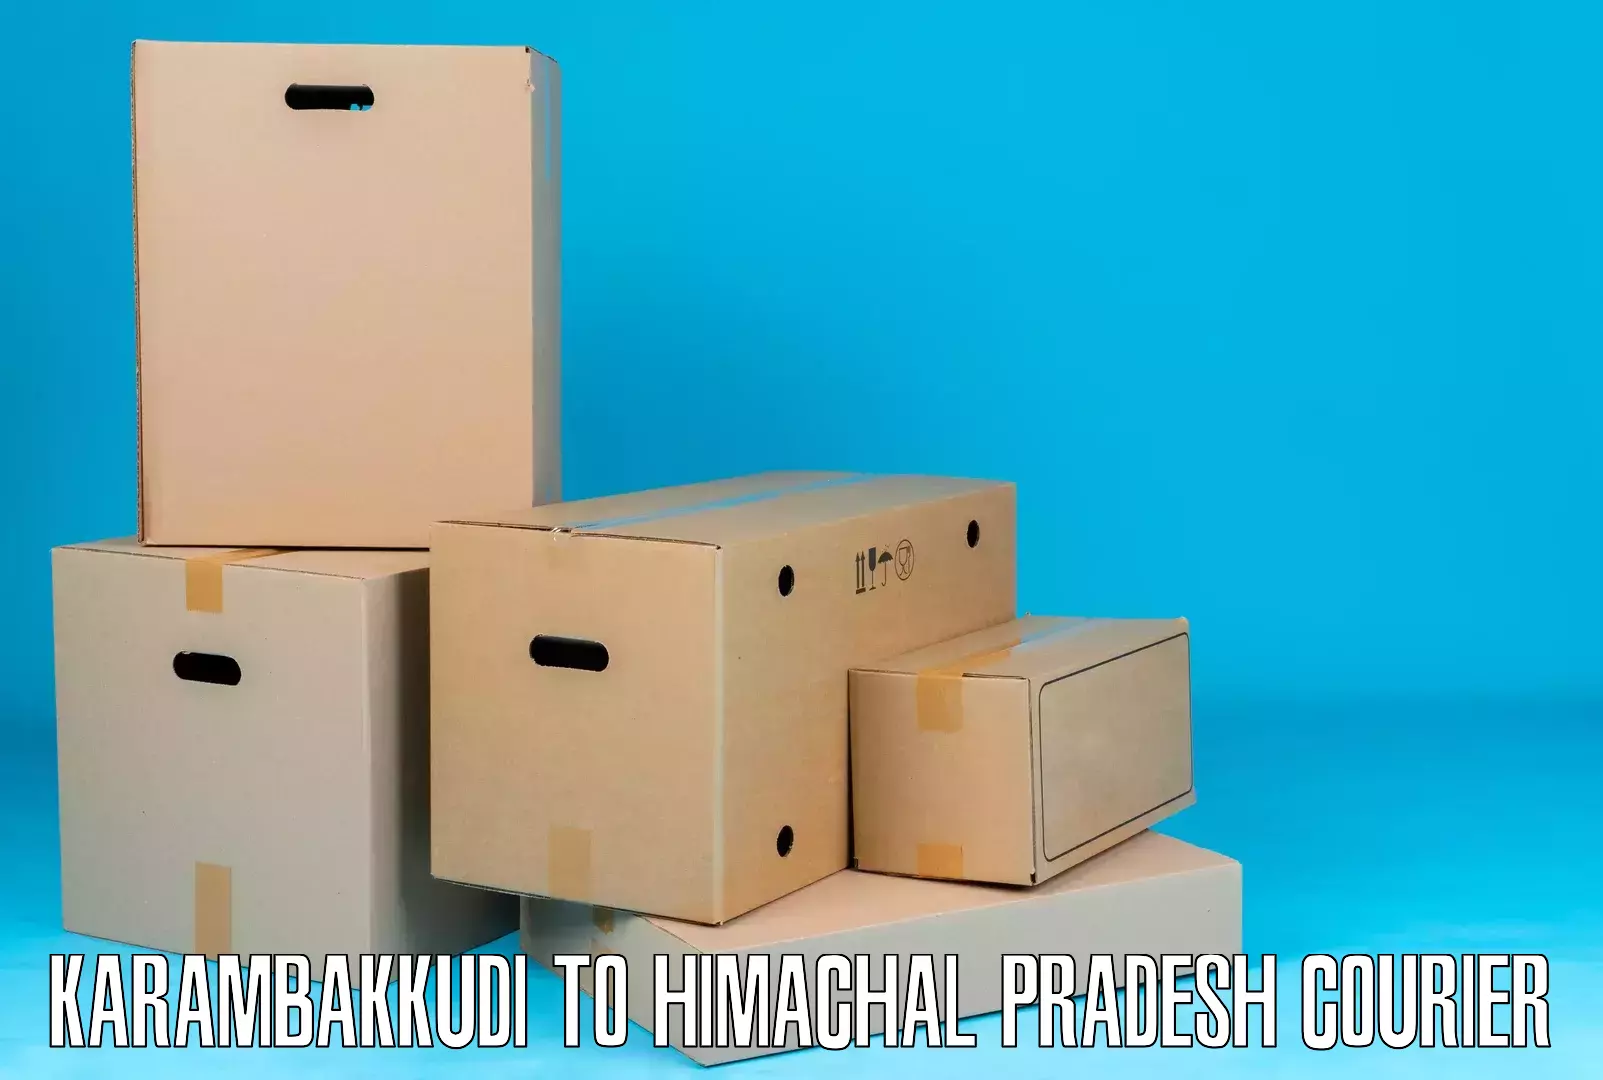 Punctual parcel services Karambakkudi to Theog